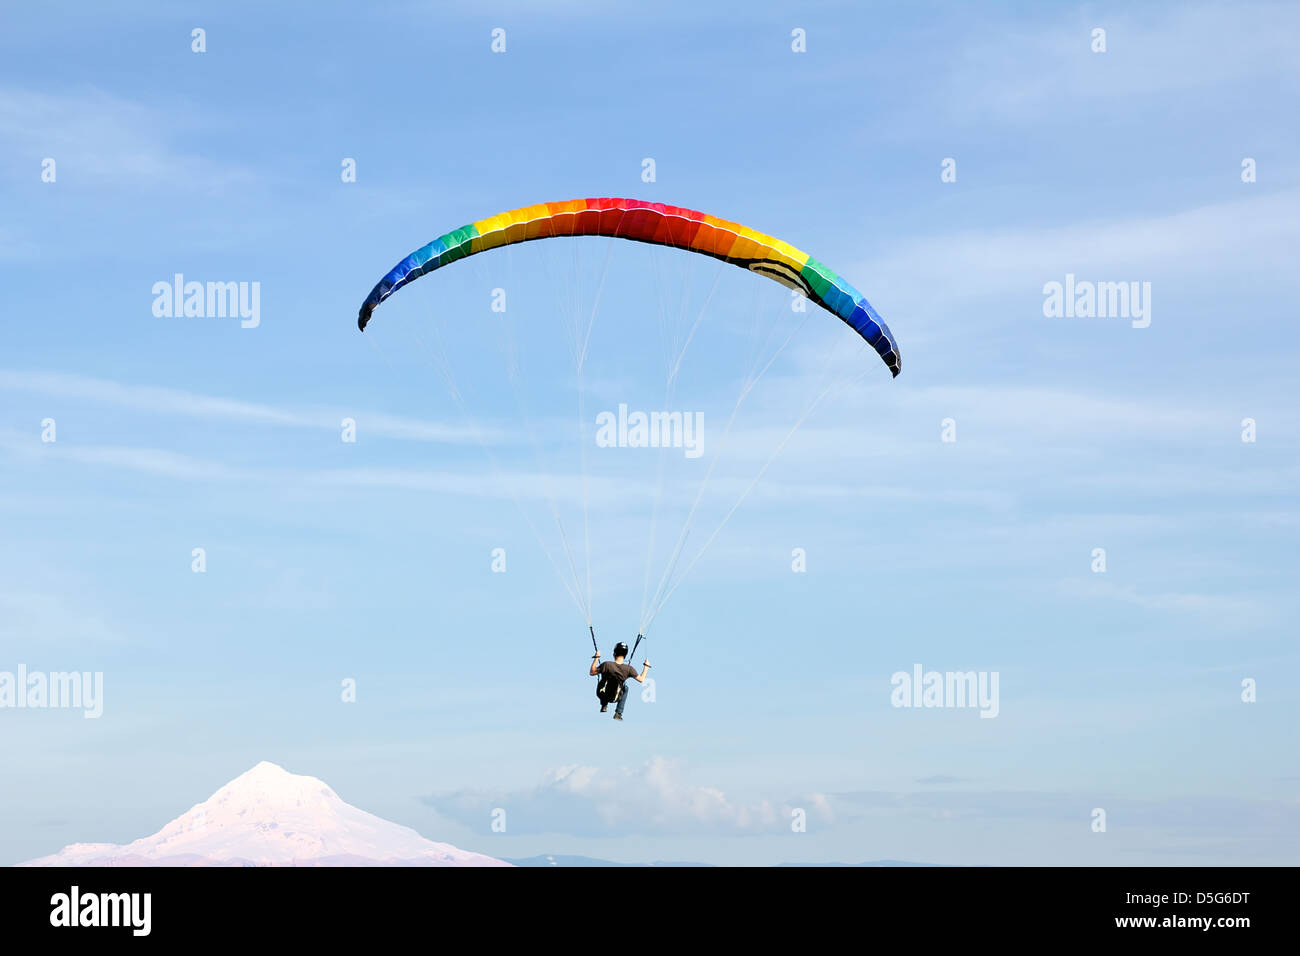 Parapente sur le mont Hood avec parachute de couleur arc-en-ciel contre Ciel Bleu Banque D'Images